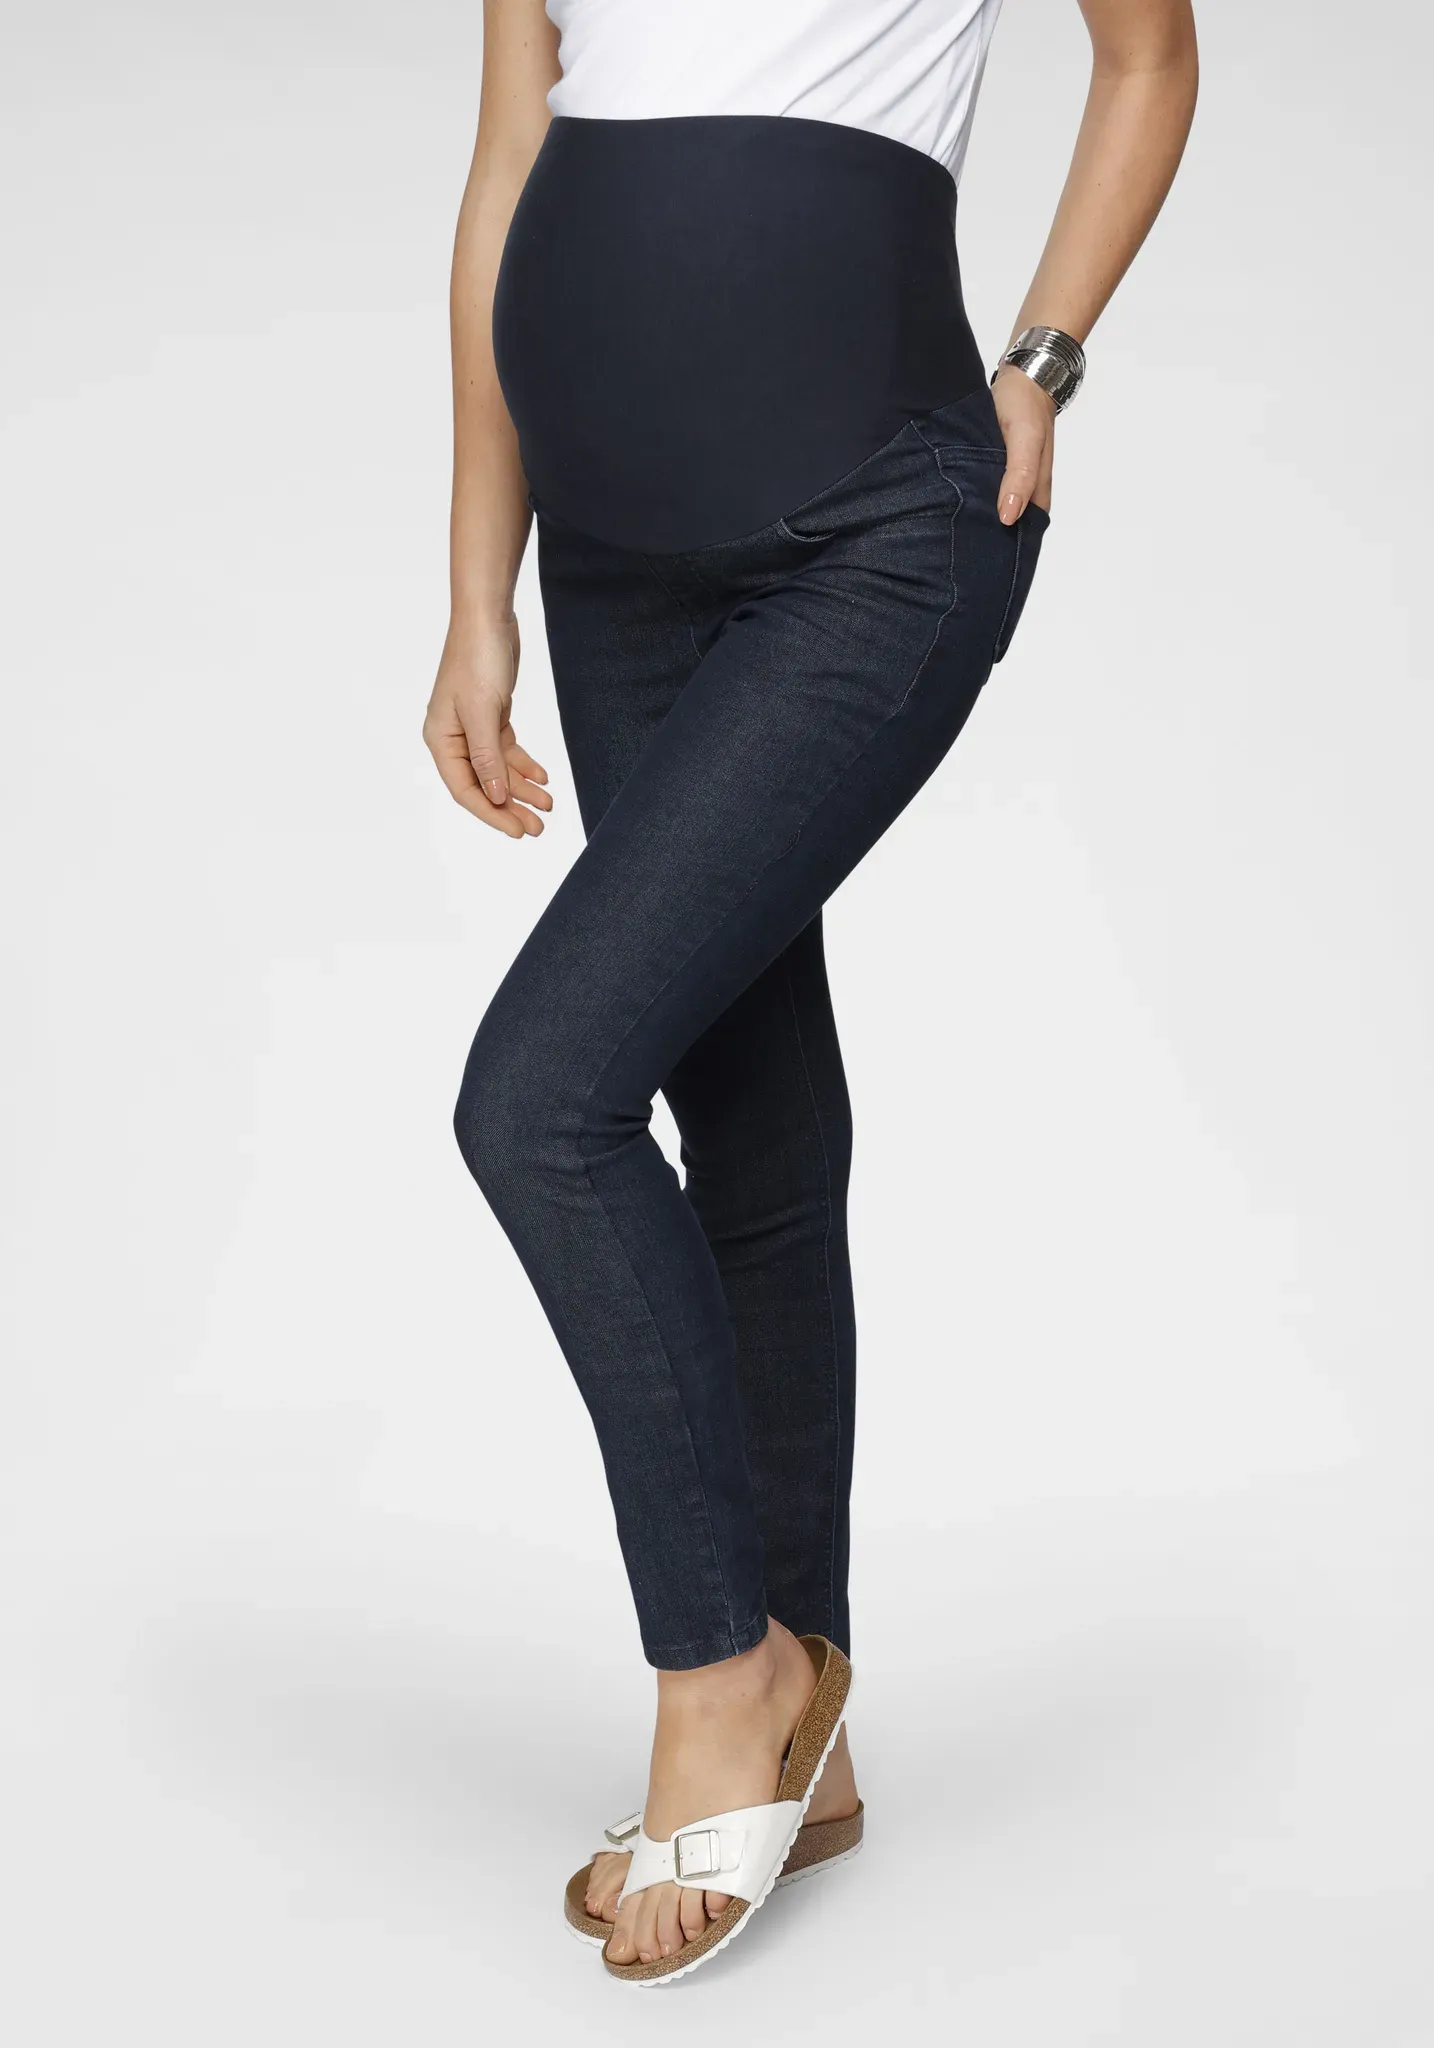 Umstandsjeans NEUN MONATE "Jeans für Schwangerschaft und Stillzeit" Gr. 40, N-Gr, blau (rinsed) Damen Jeans Umstandsmode in modischer Waschung